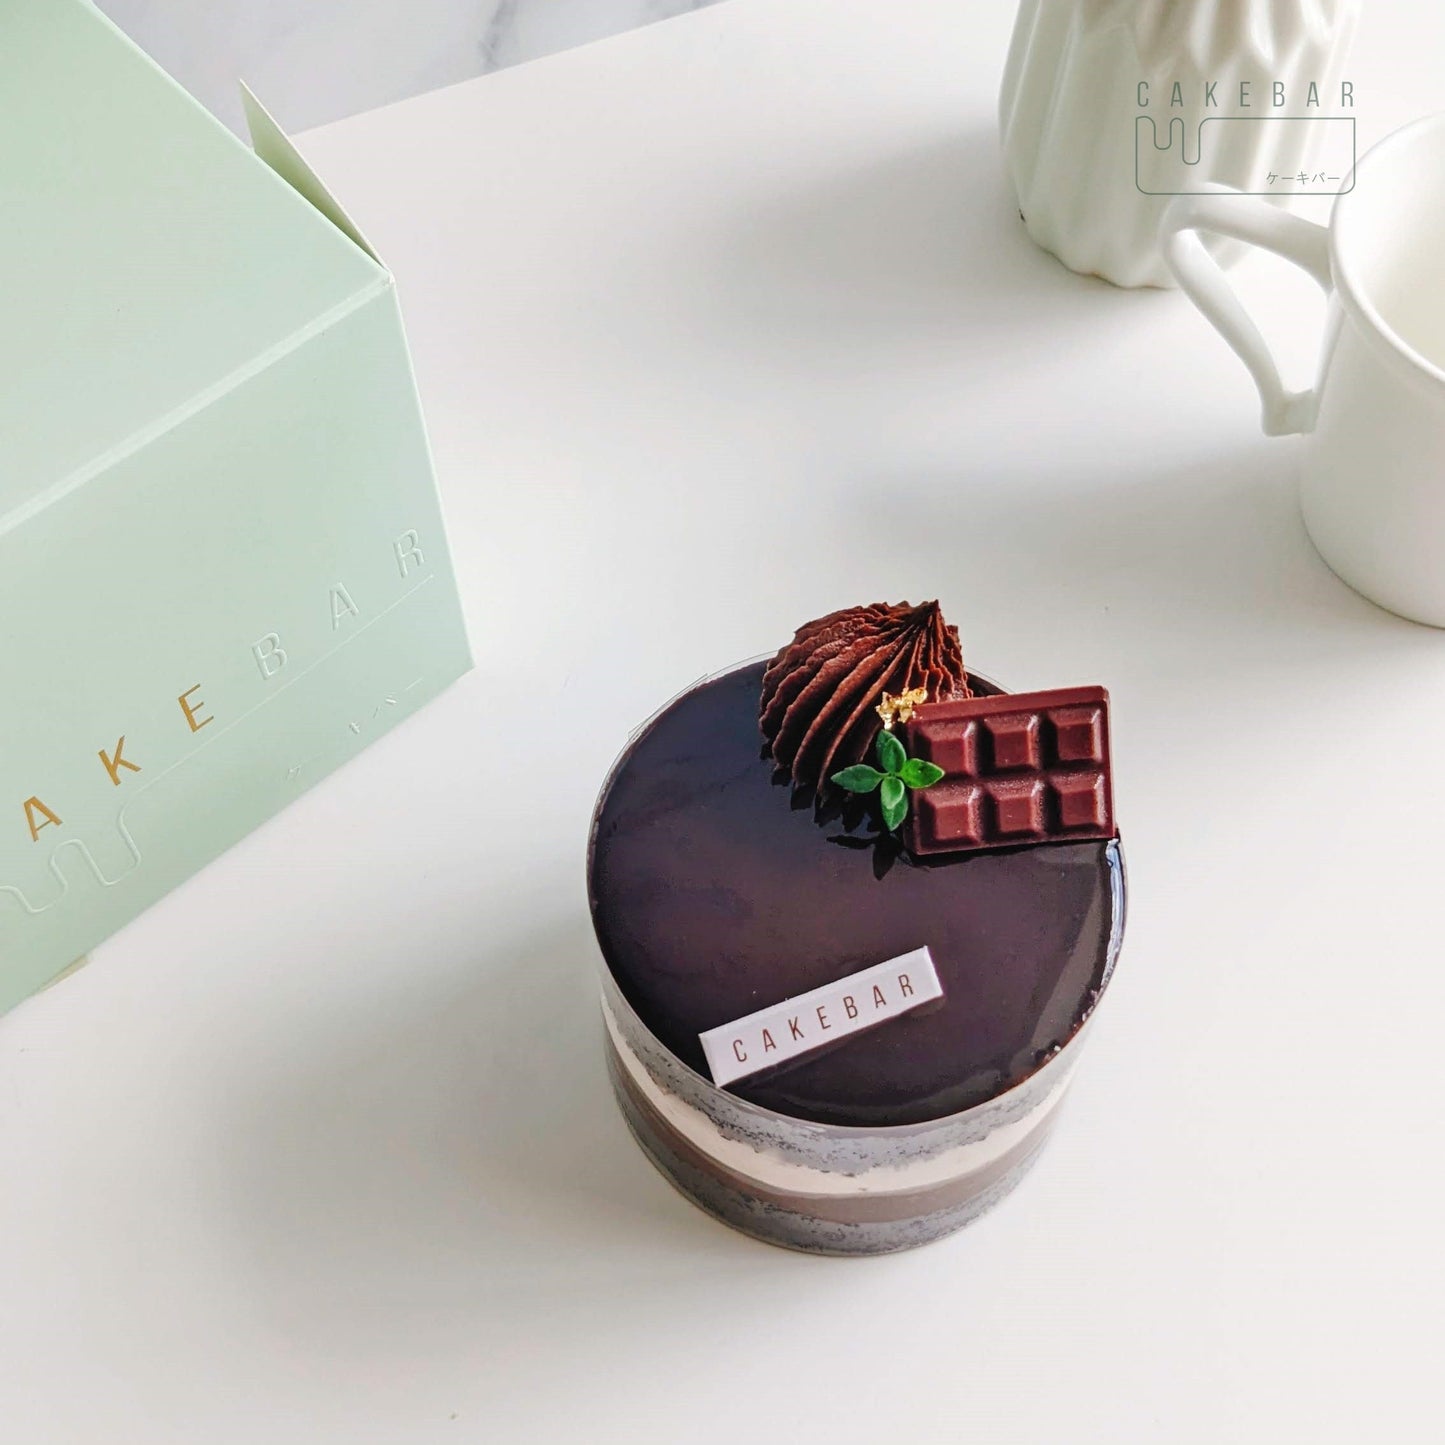 75% Dark Chocolate Fudge (Gift Box)